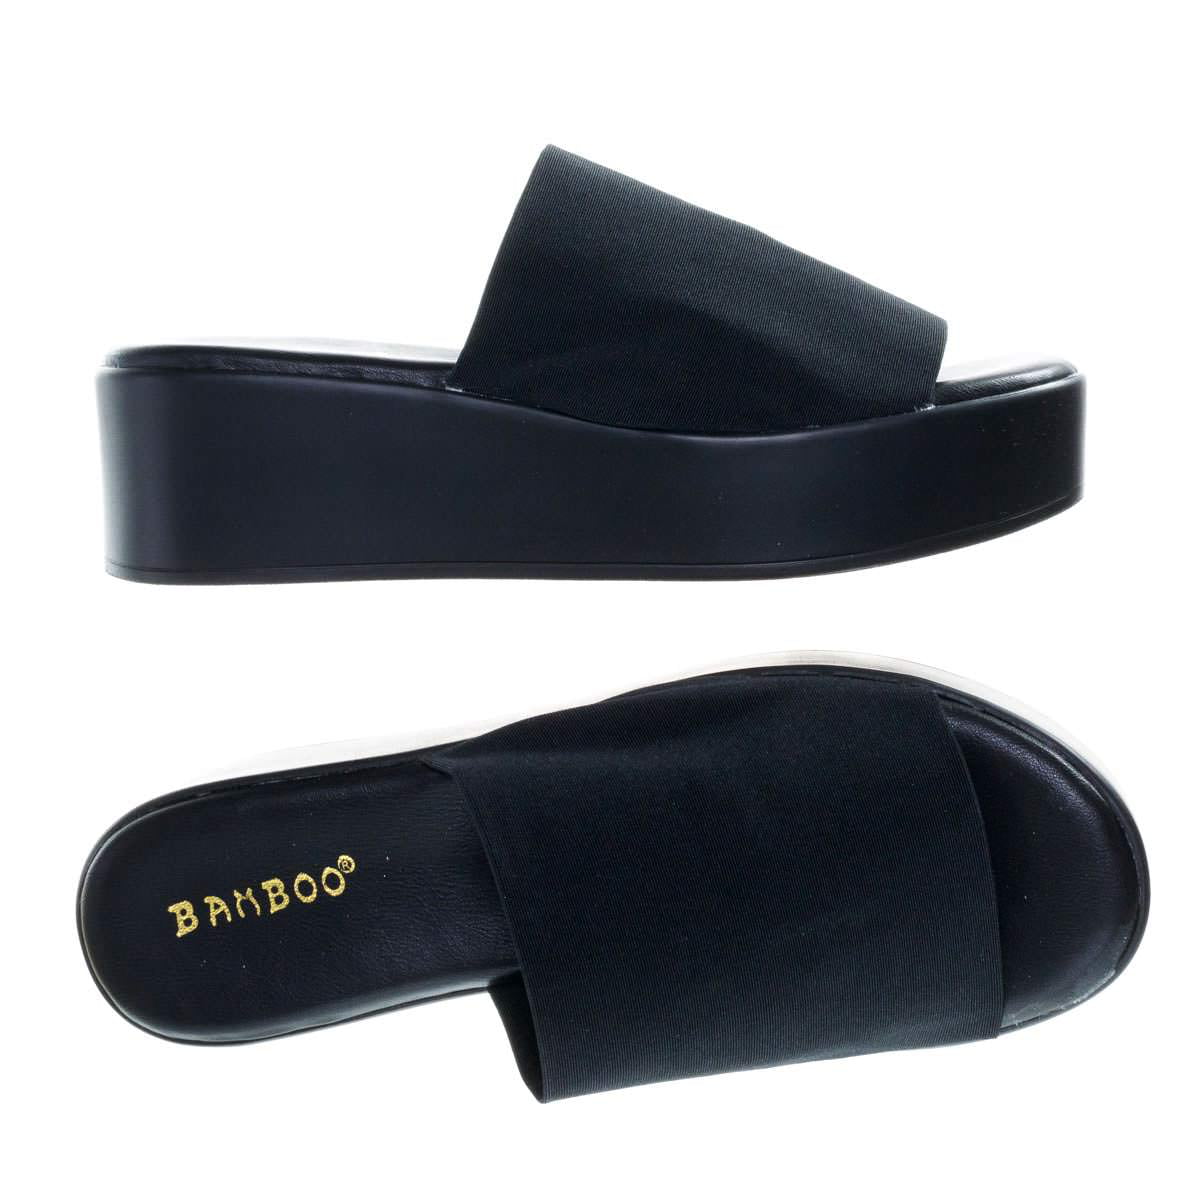 Bamboo - Bonus02 by Bamboo, Platform / Flatform Slide Slipper Sandal ...